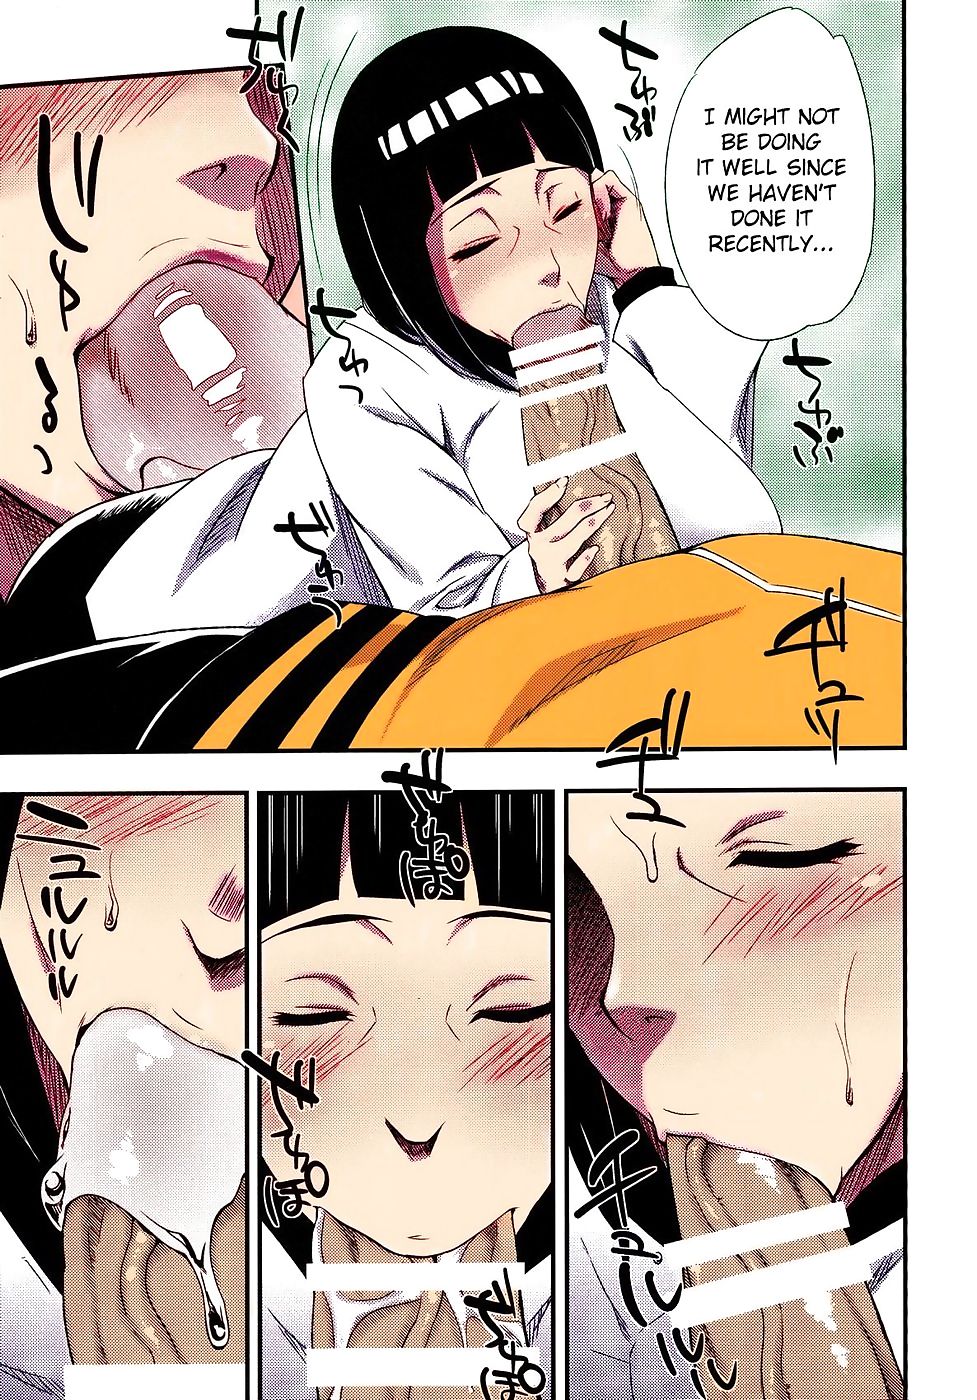 Naruto – kage Hinata ni Sakura saku Sara wataru page 1